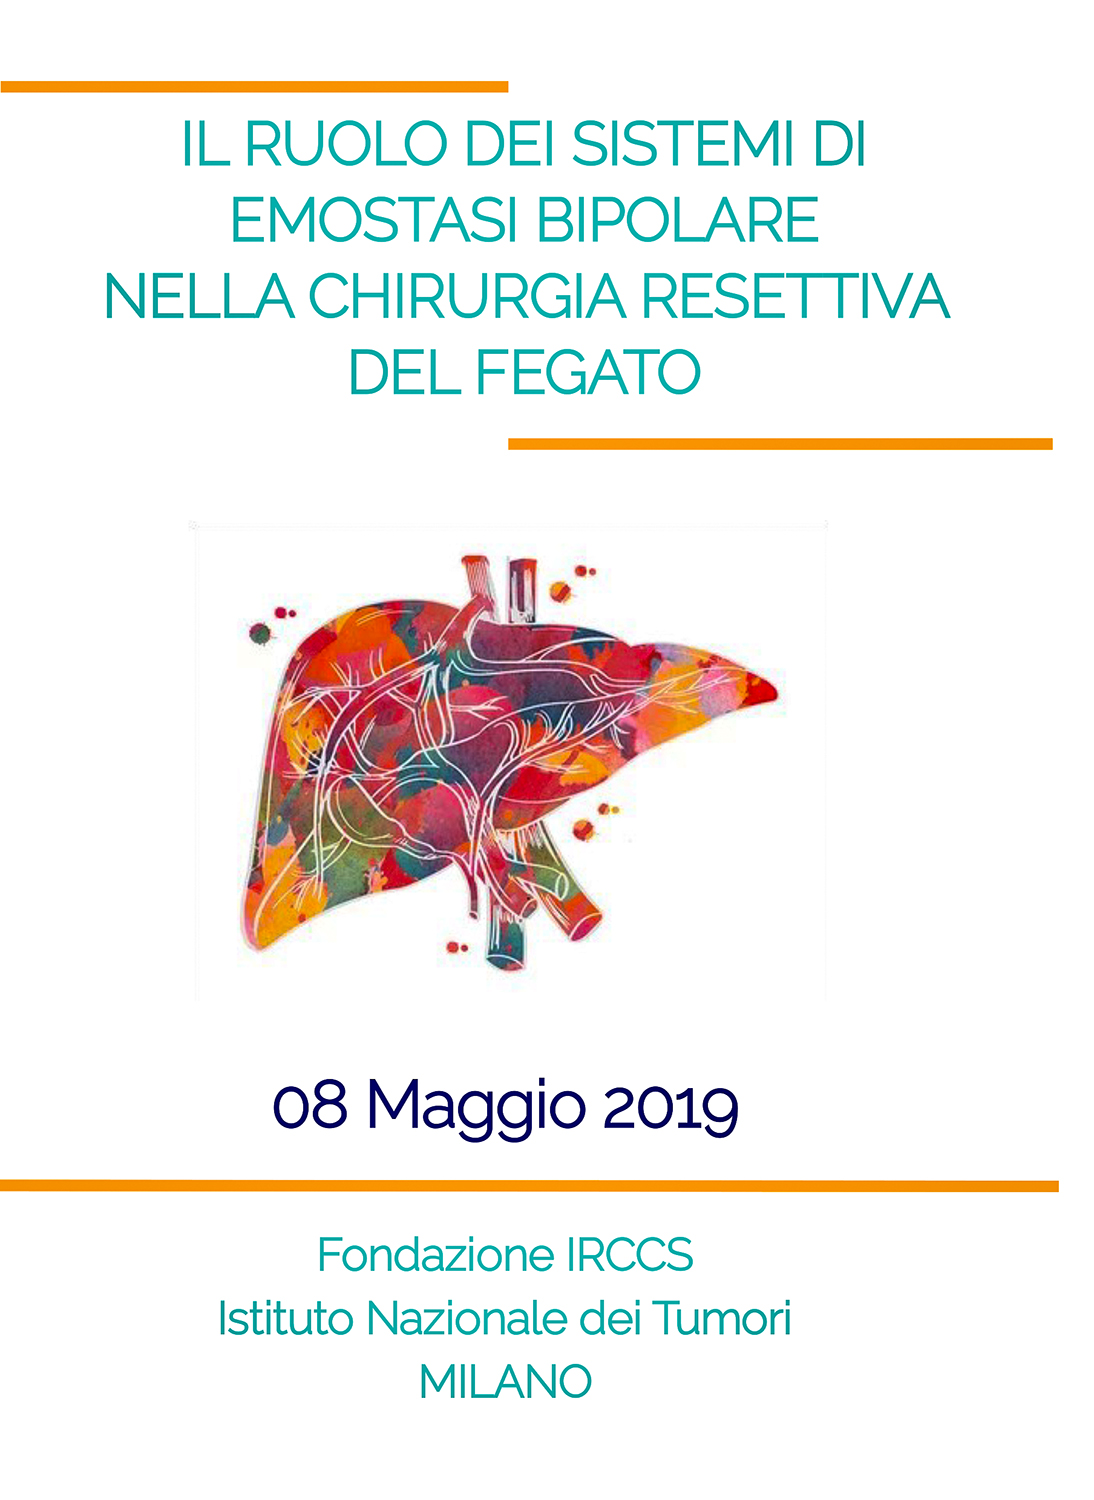 Il ruolo dei sistemi di emostasi bipolare nella chirurgia resettiva del fegato - Milano, 8 maggio 2019